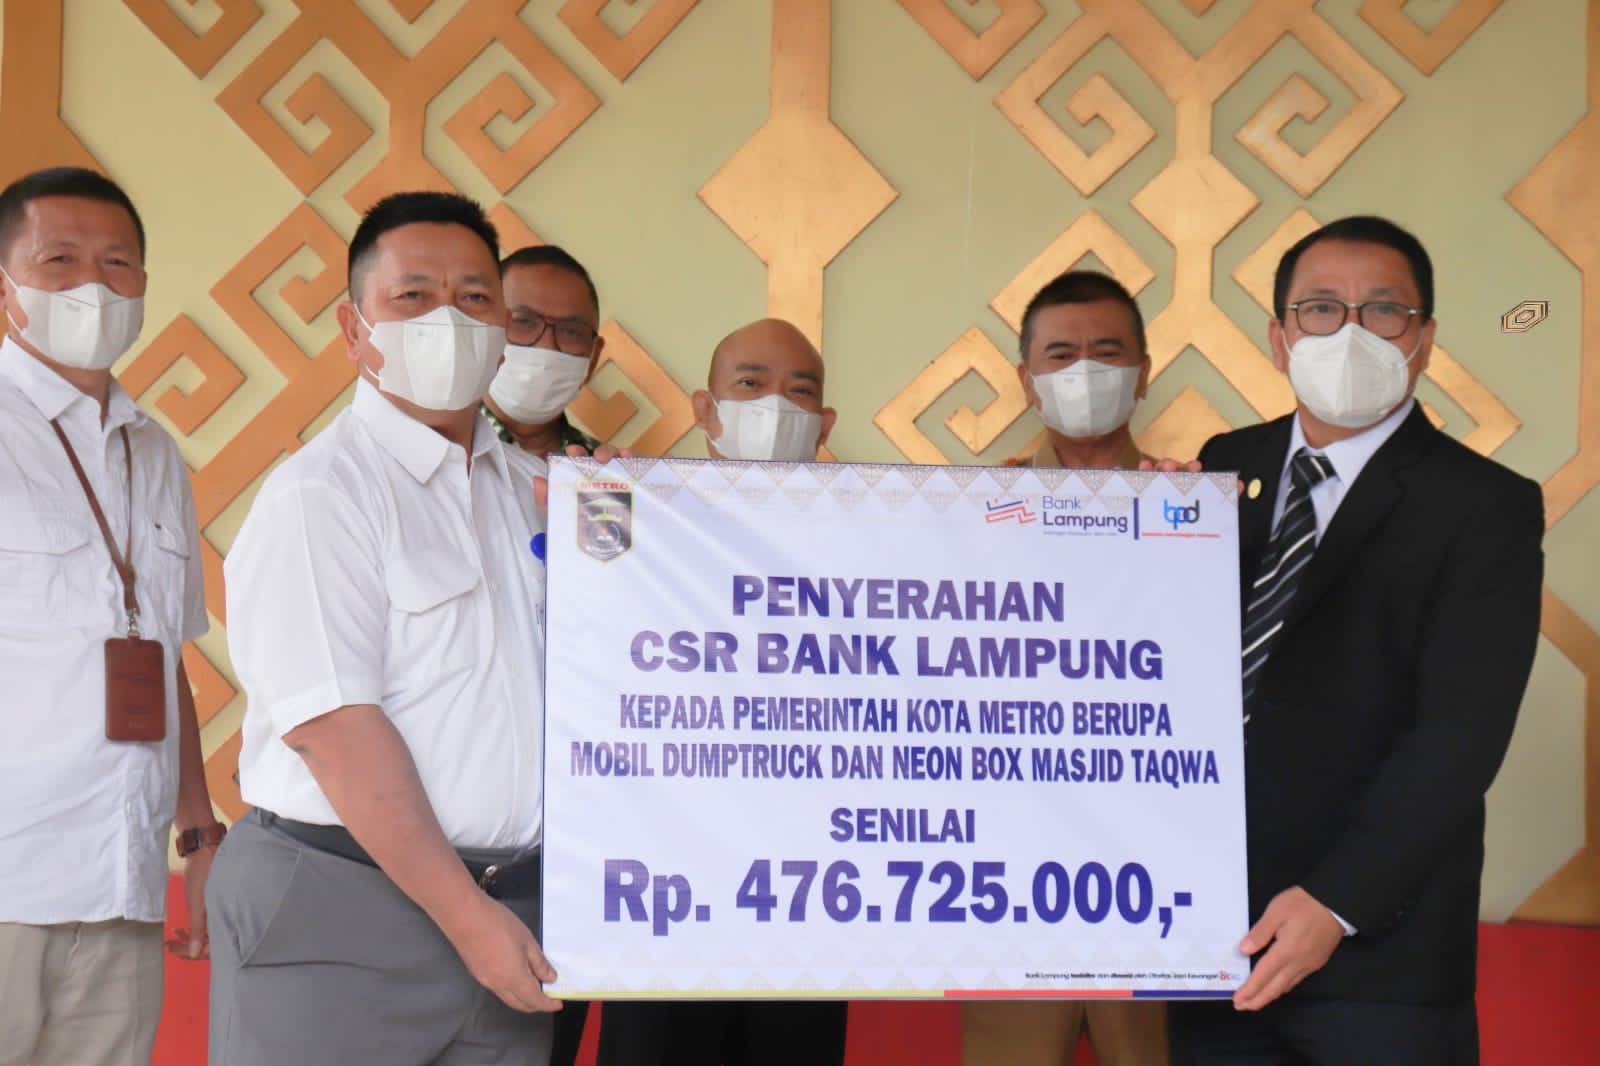 Bank Lampung kembali menyerahkan bantuan Corporate Social Responsibility (CSR) Kepada Pemerintah Kota Metro